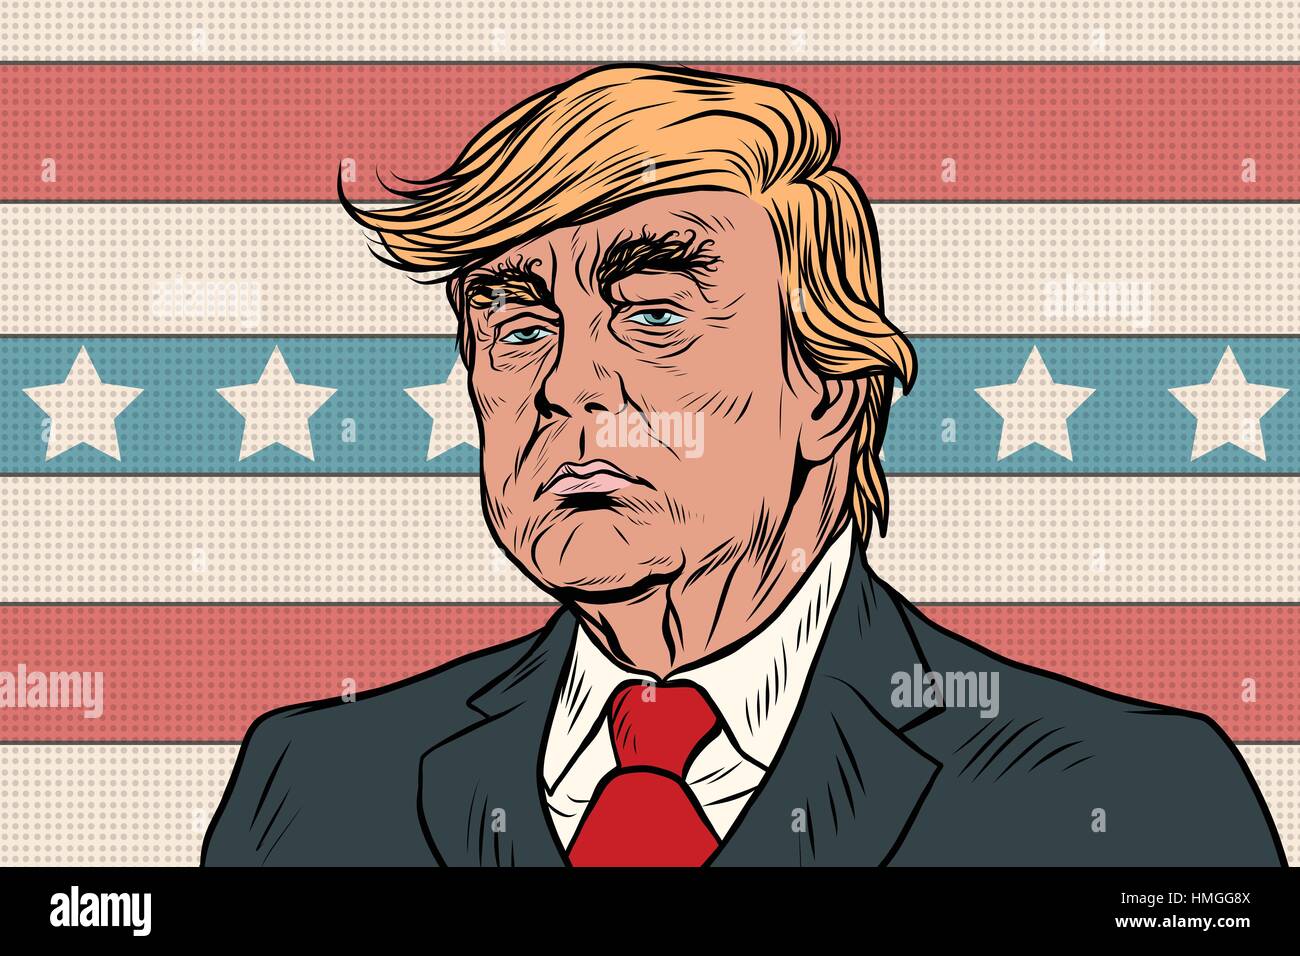 Donald Trump el Presidente de los Estados Unidos cartoon pop art retr Ilustración del Vector